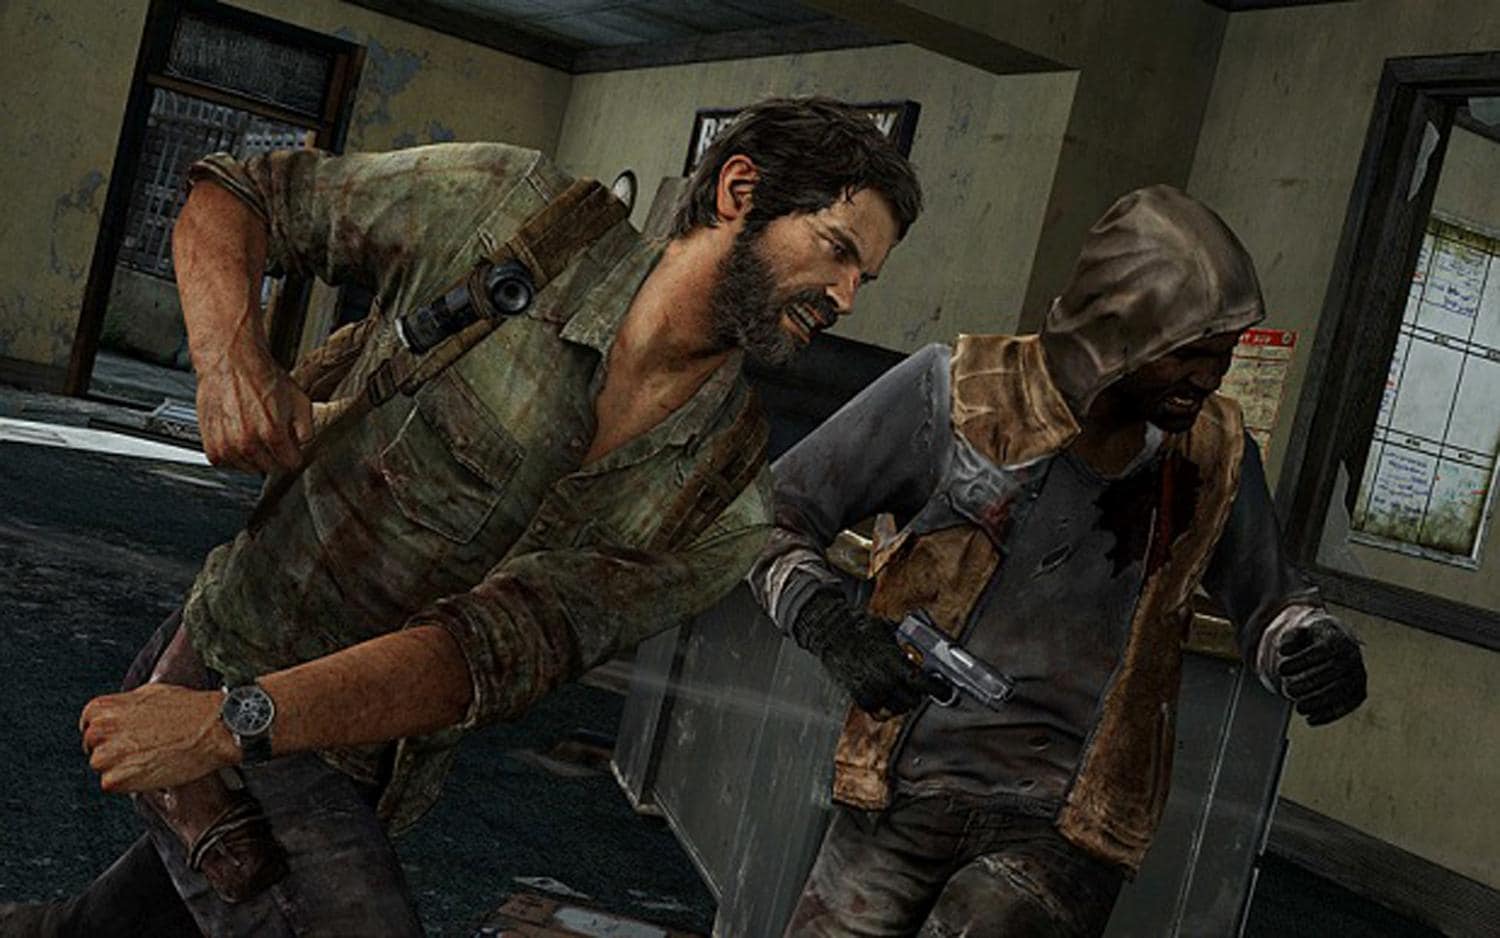 The Last of Us Parte I  Versão para PC tem a pior nota da Naughty Dog no  Metacritic